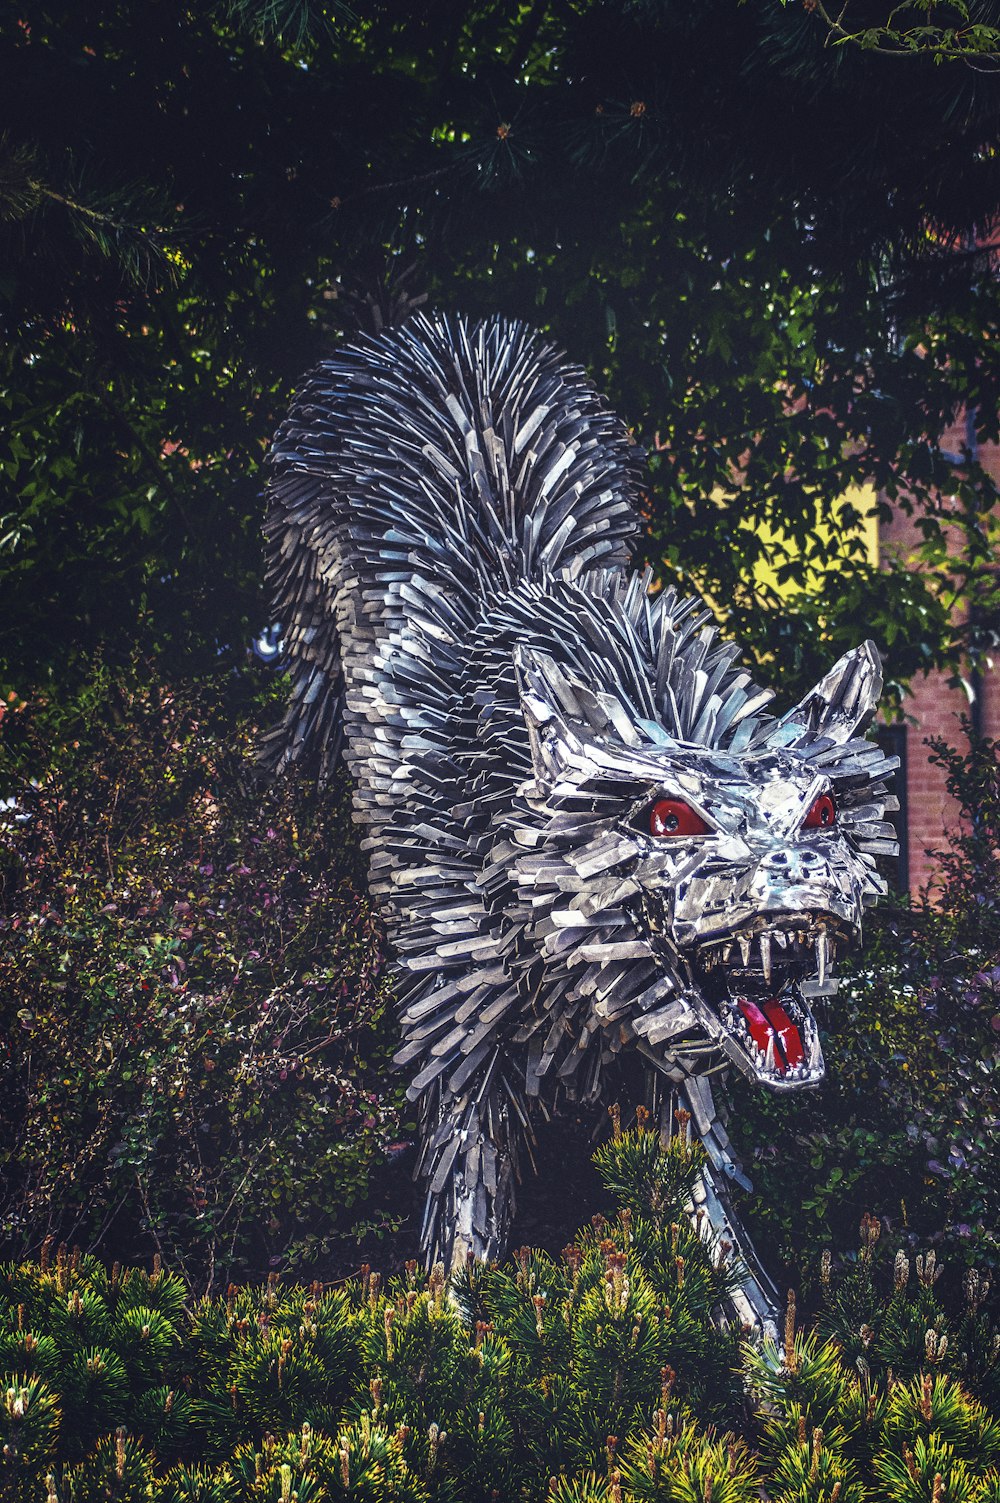 빨간 눈의 흰 늑대 동상